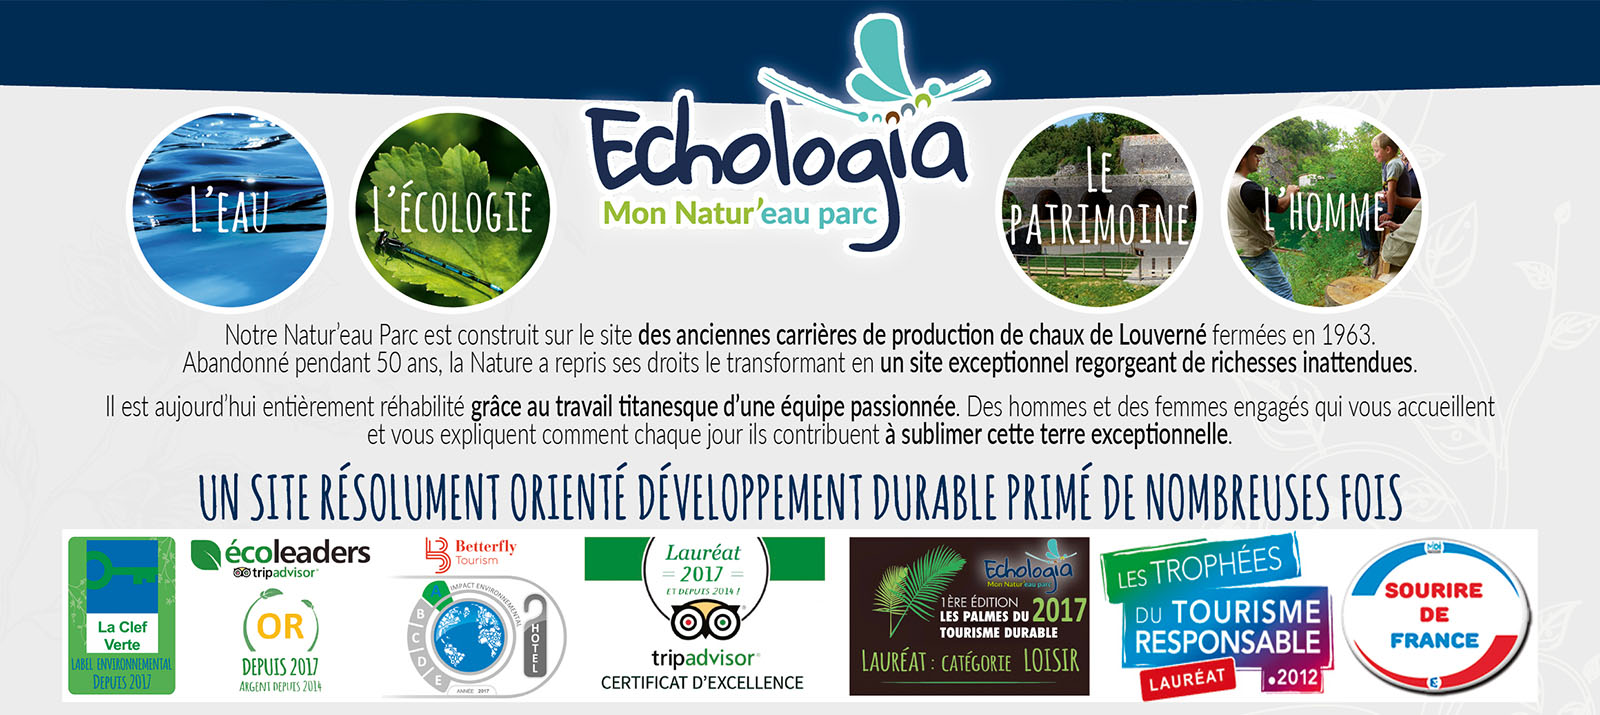 Salon de l Aquaponie sur Echologia developpement durable